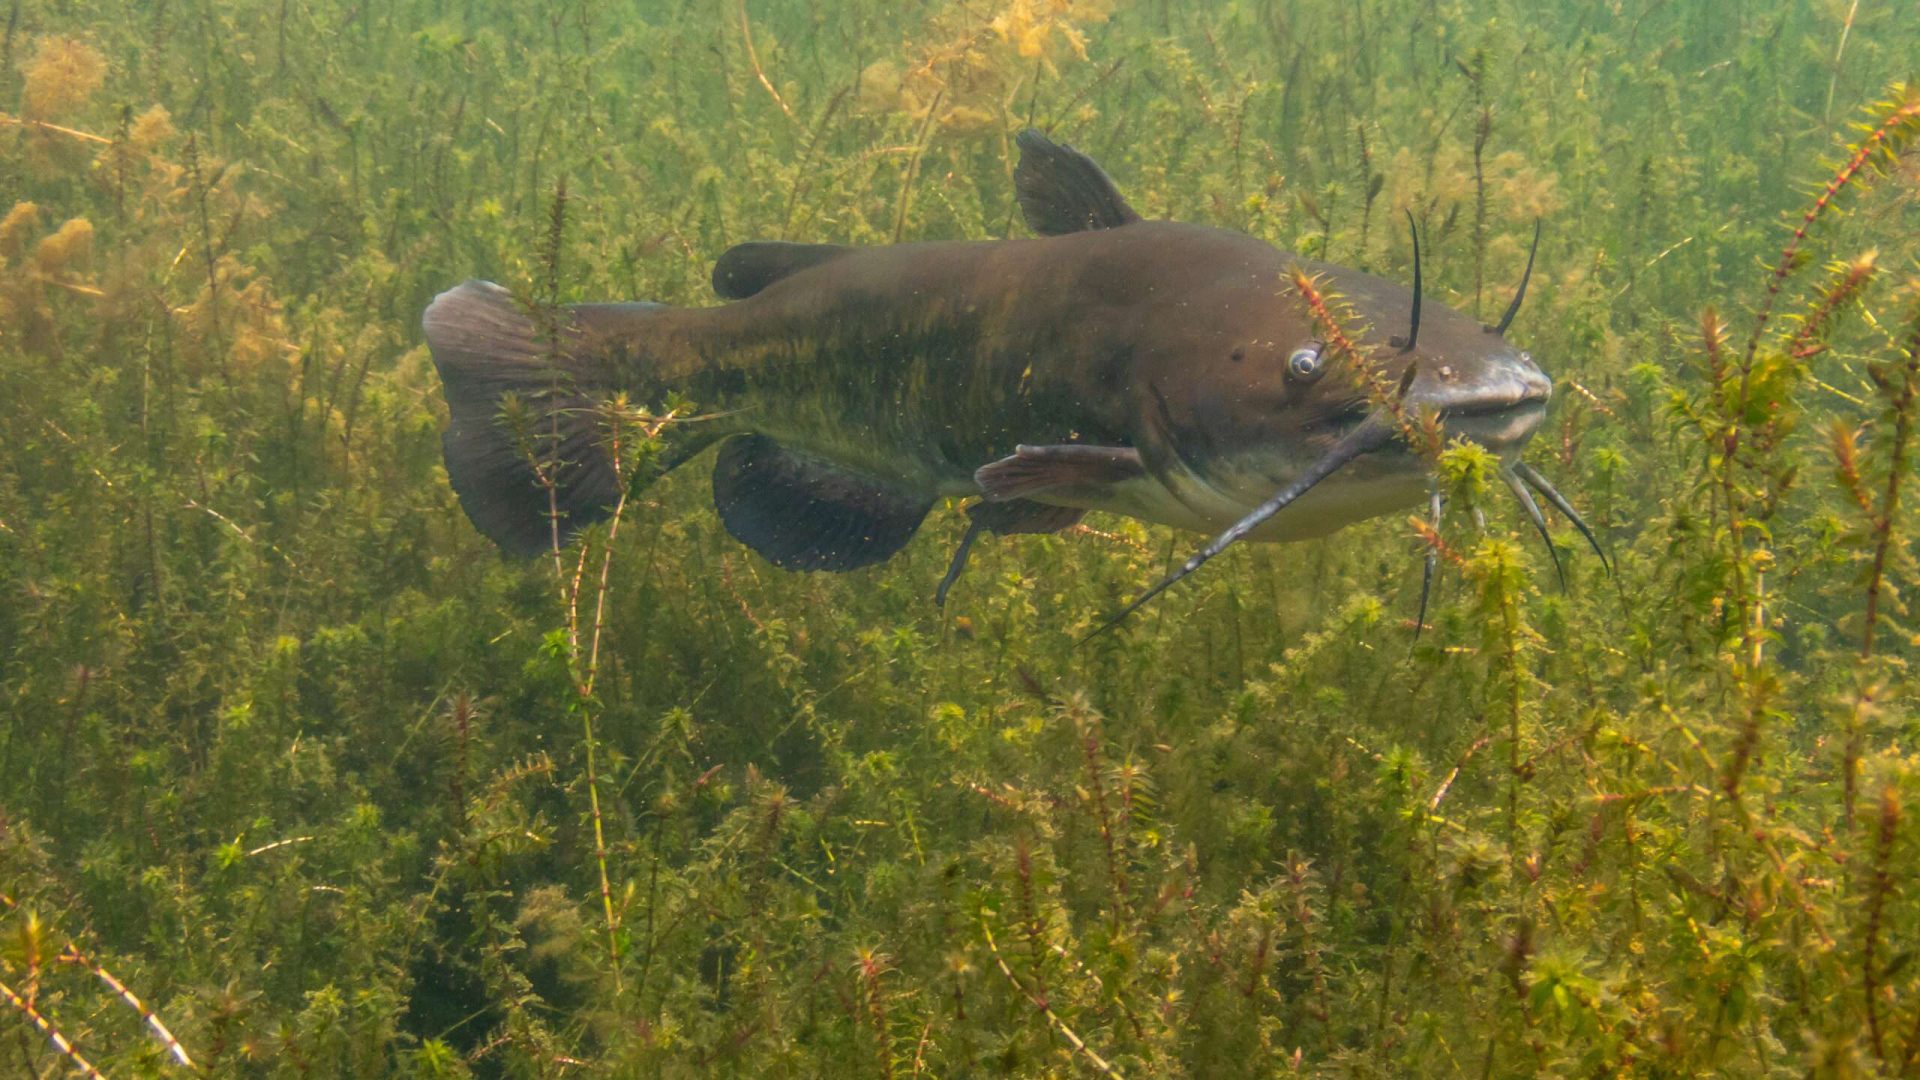 Catfish swimming in underwater vegetation.